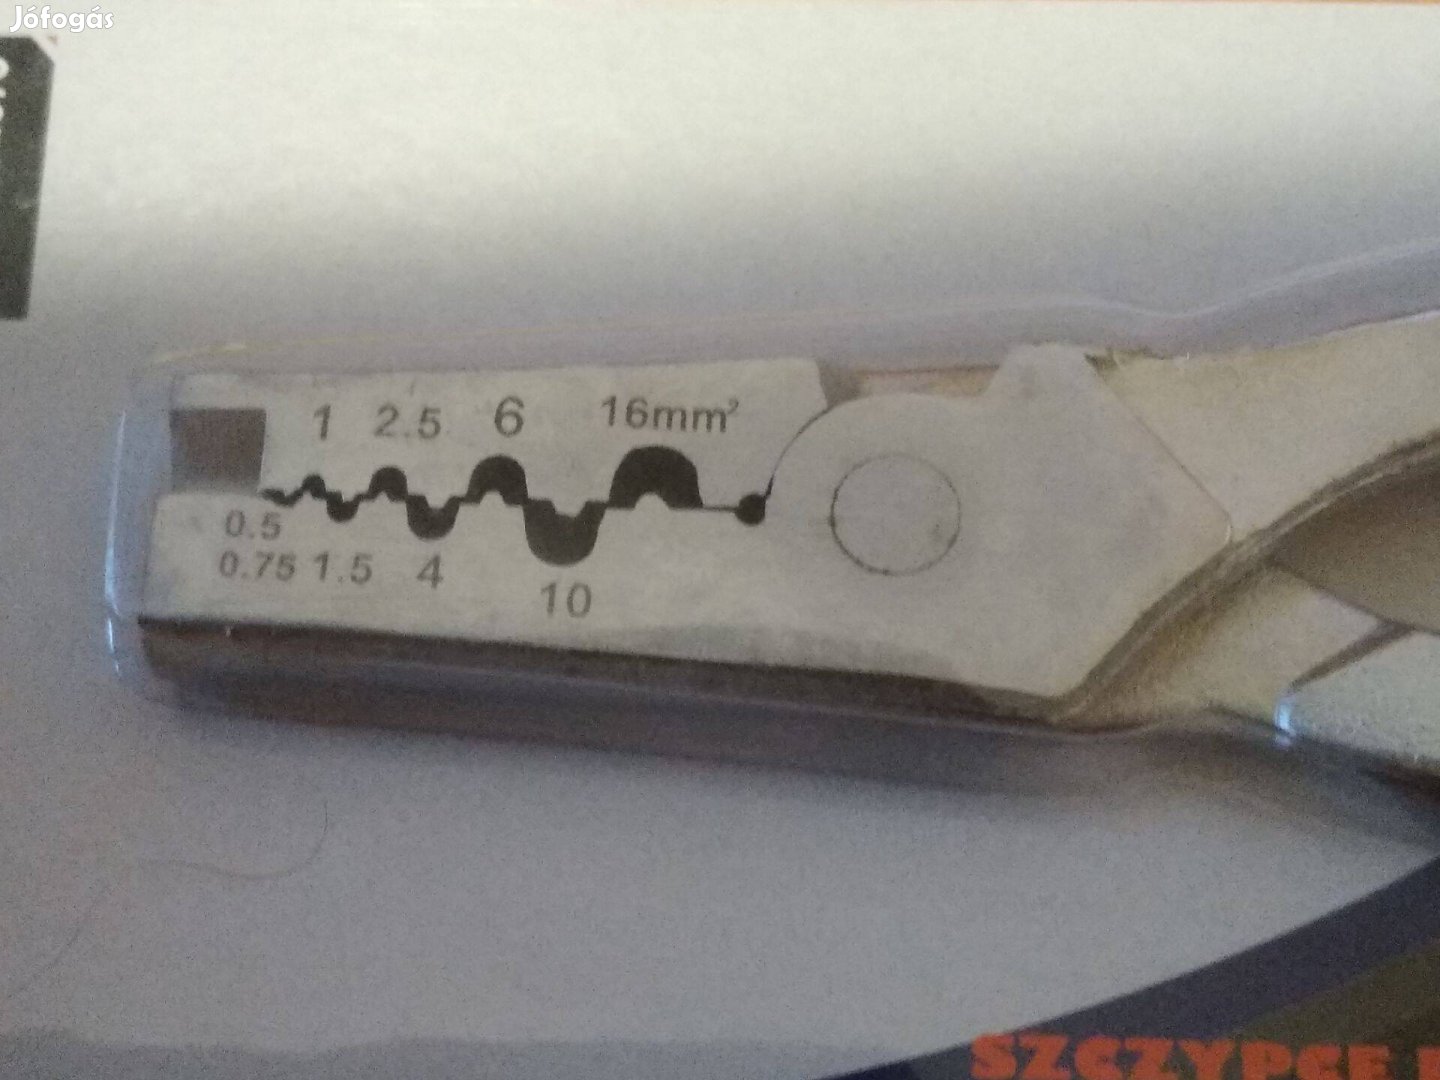 Silver krimpelő fogó 0.5-16 mm2 vezetékekhez új, bontatlan dobozában